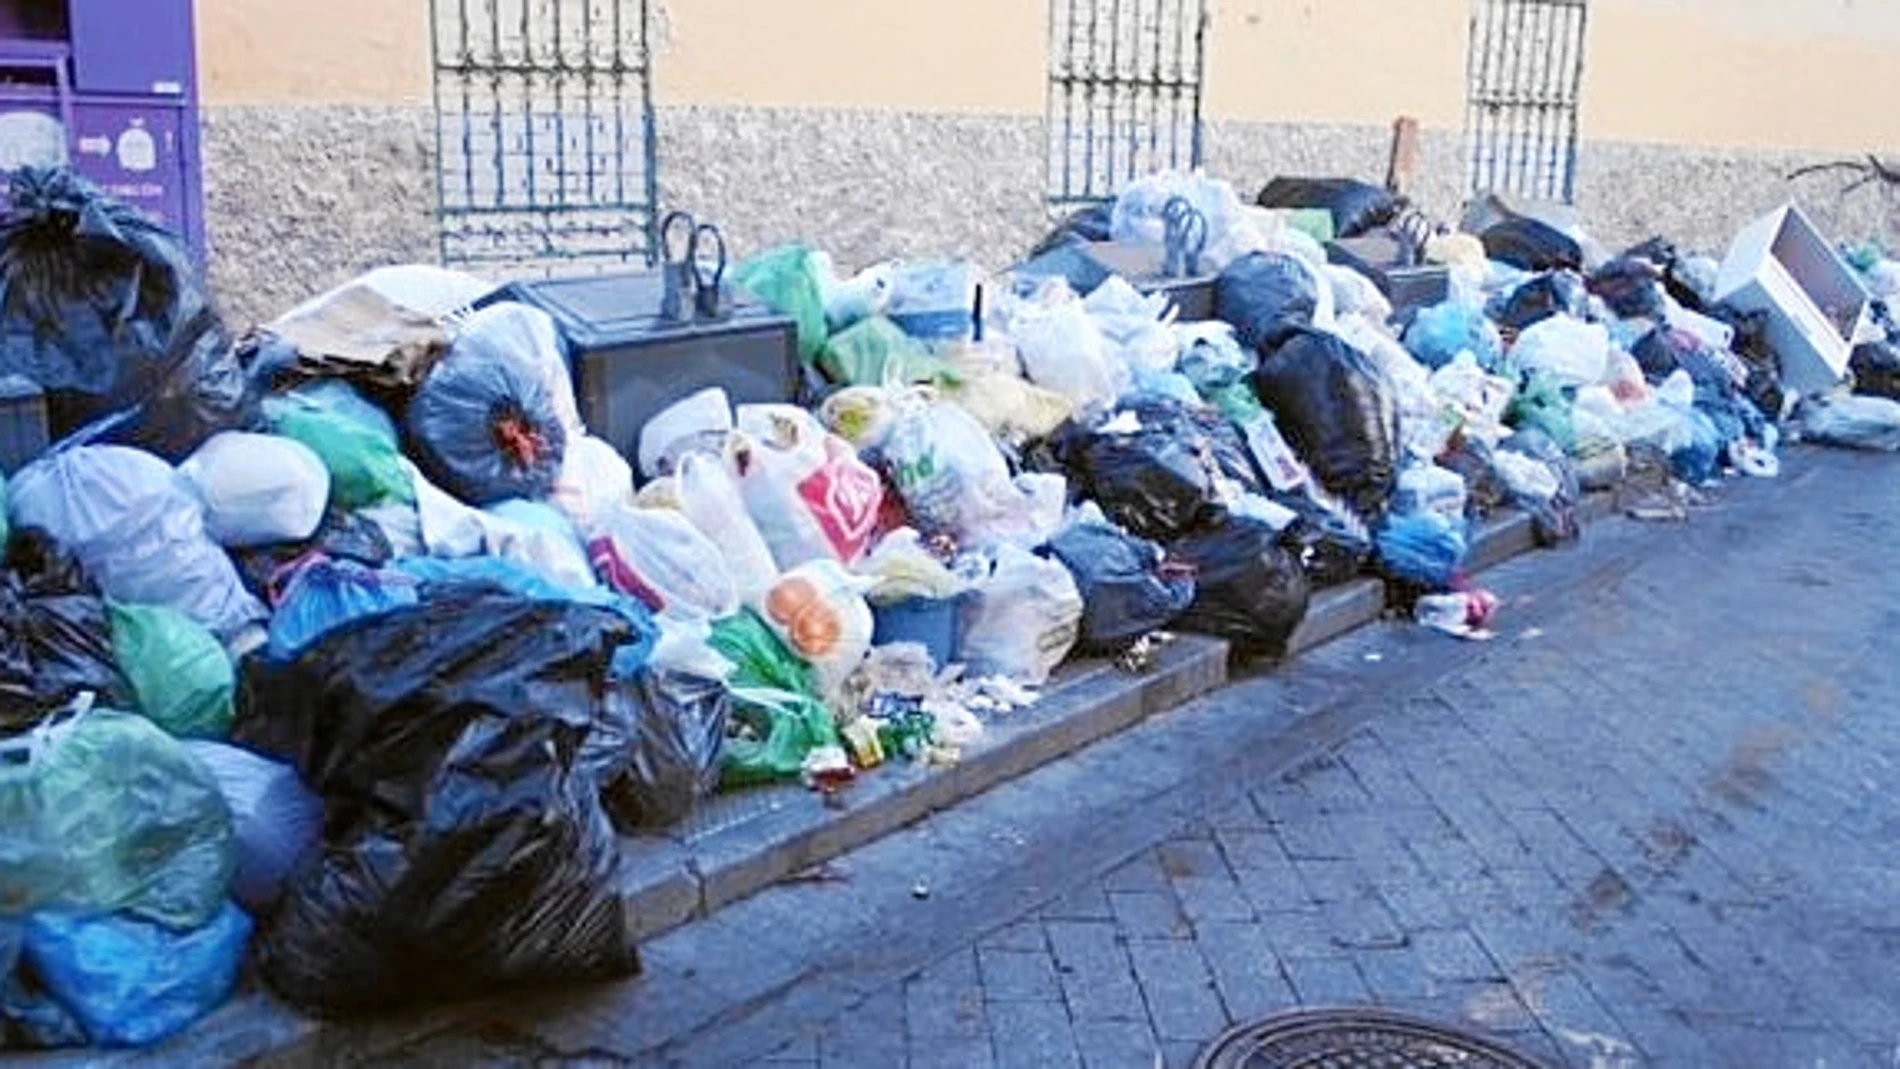 Los vecinos de Alcorcón llevan ya diez días sufriendo la huelga de recogida de basuras